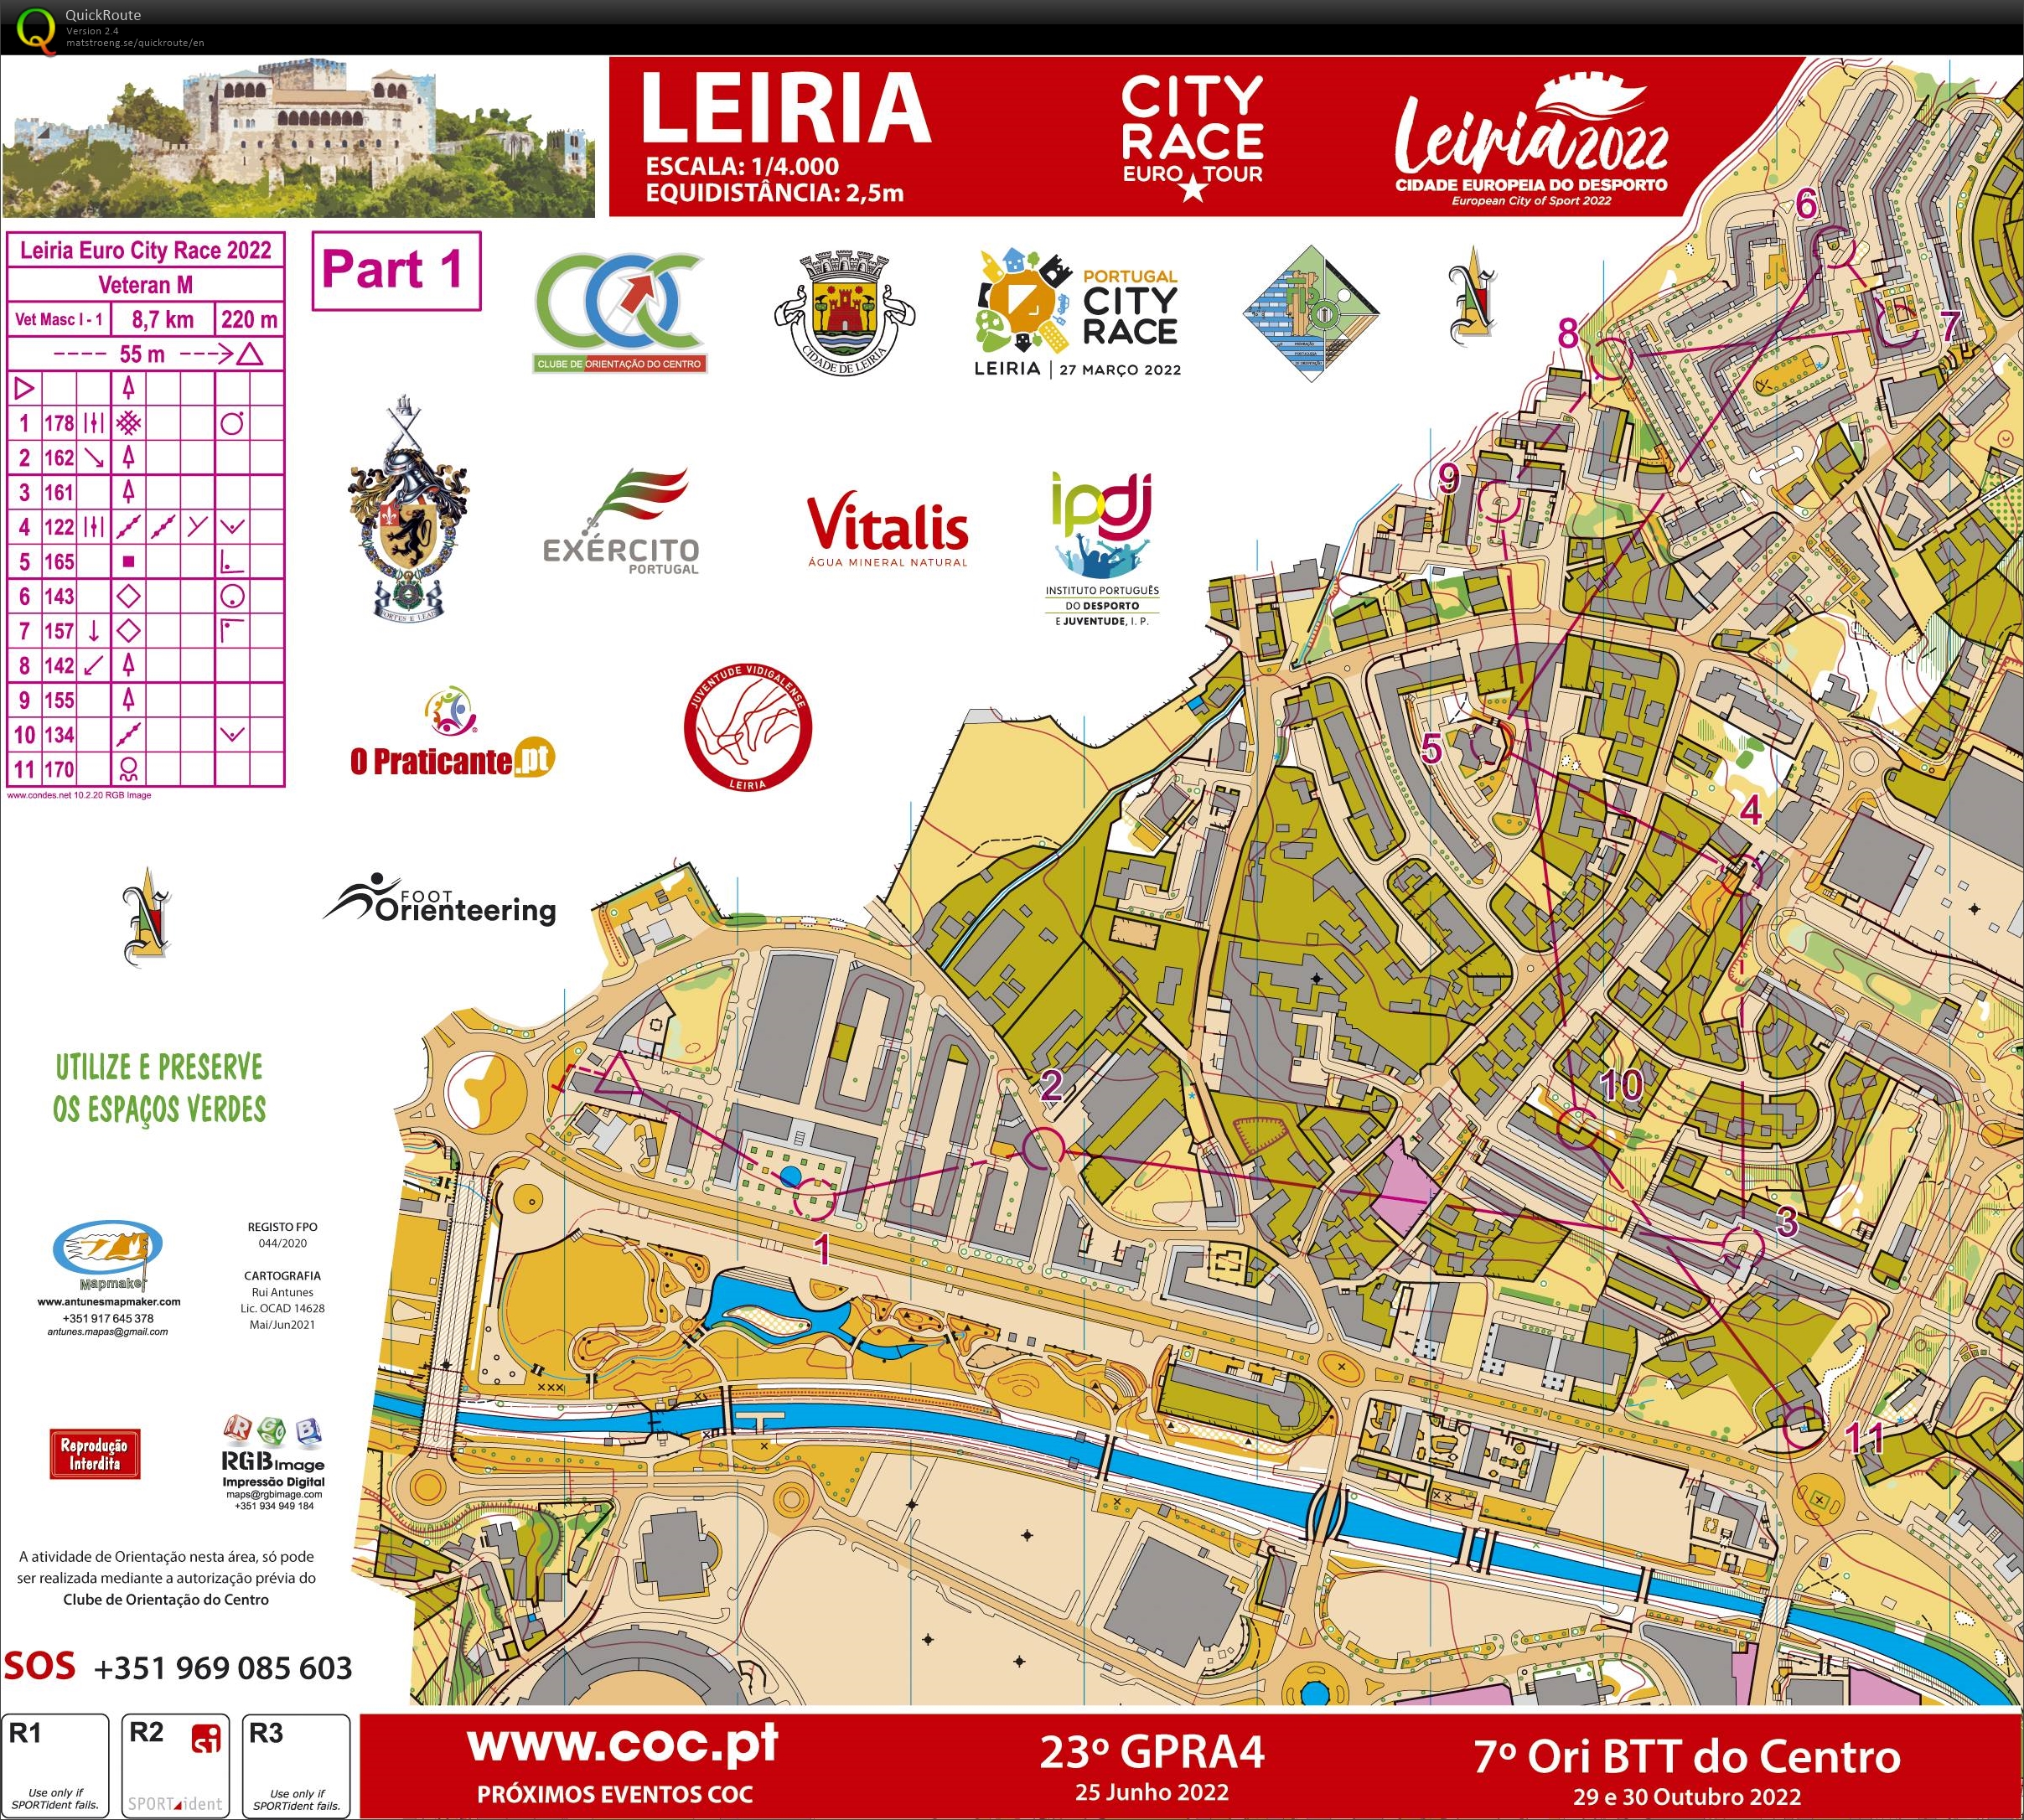 Leiria City Race Euro Tour 2022 (Part1) (27/03/2022)